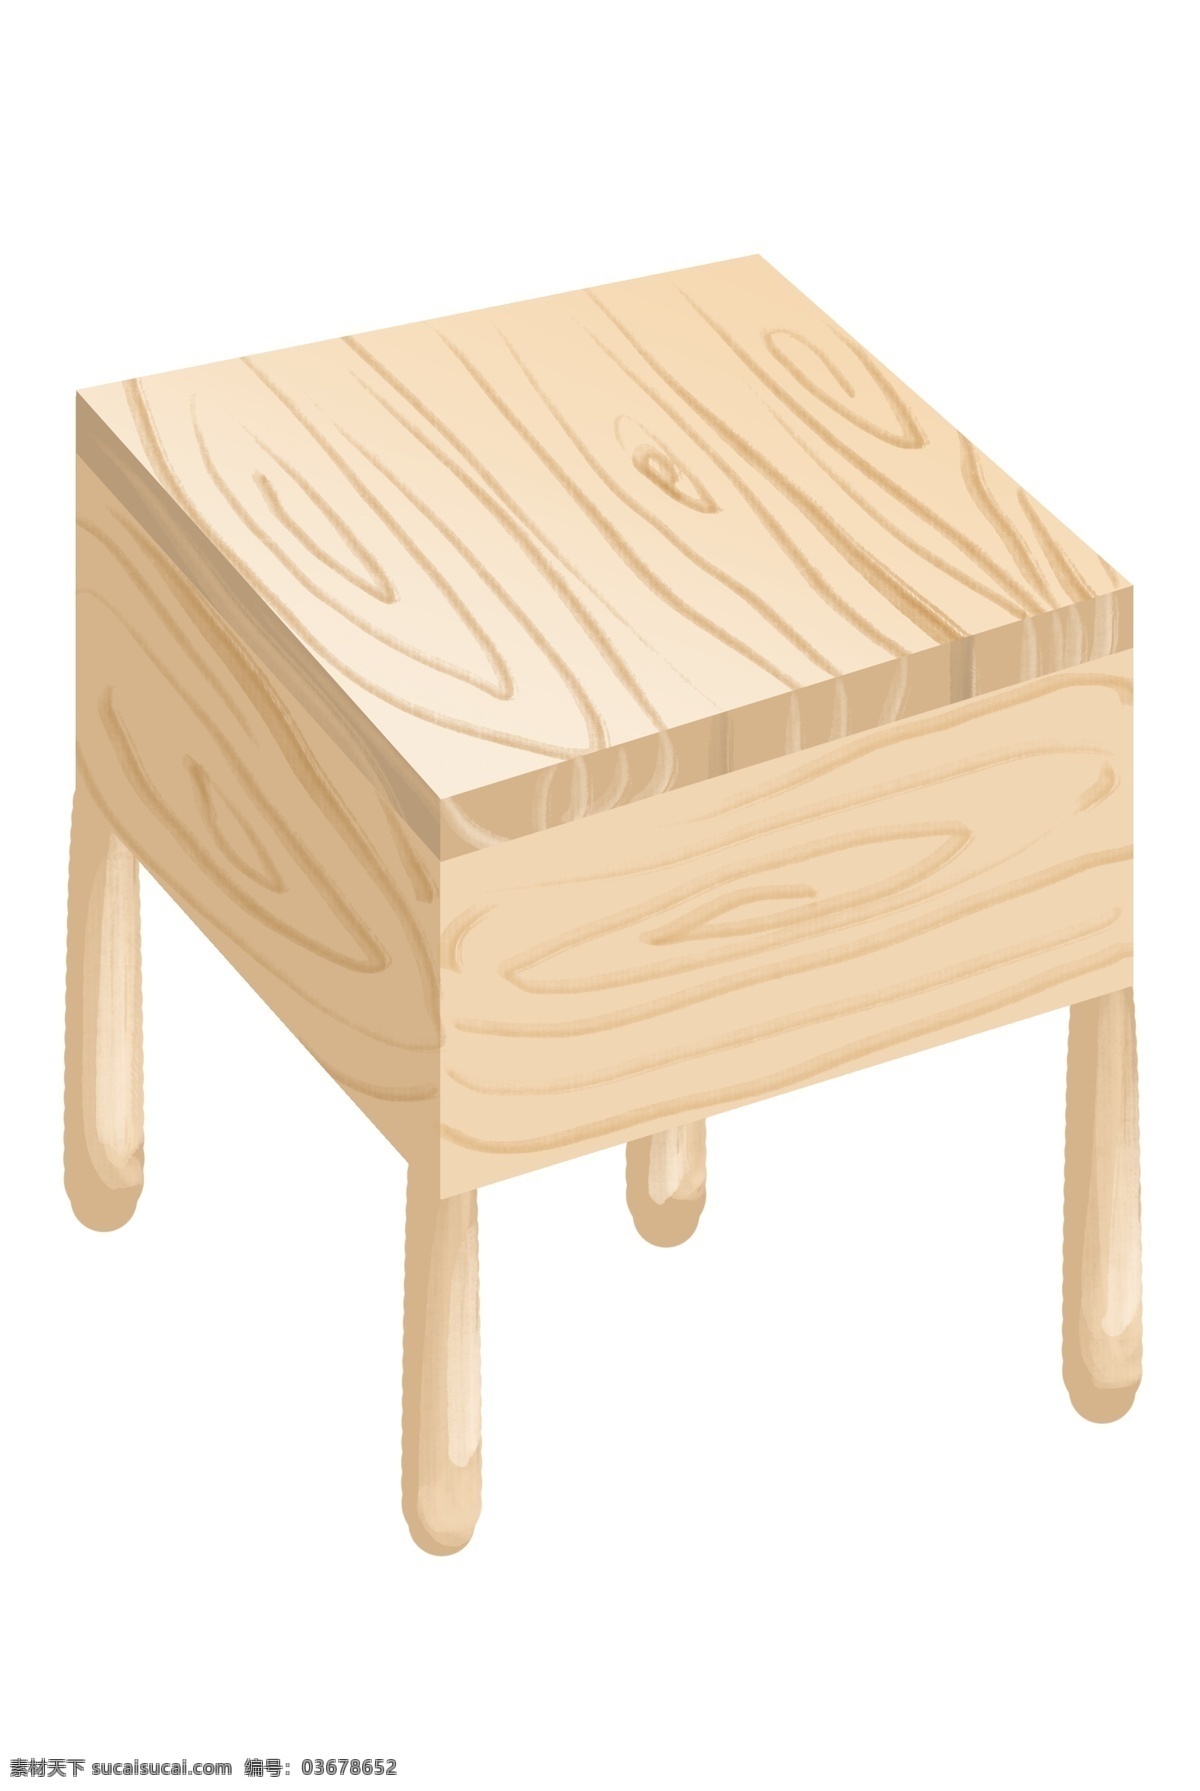 白色 木质 桌子 插画 白色的桌子 卡通插画 木质插画 木纹插画 木质产品 木纹物品 精美的桌子